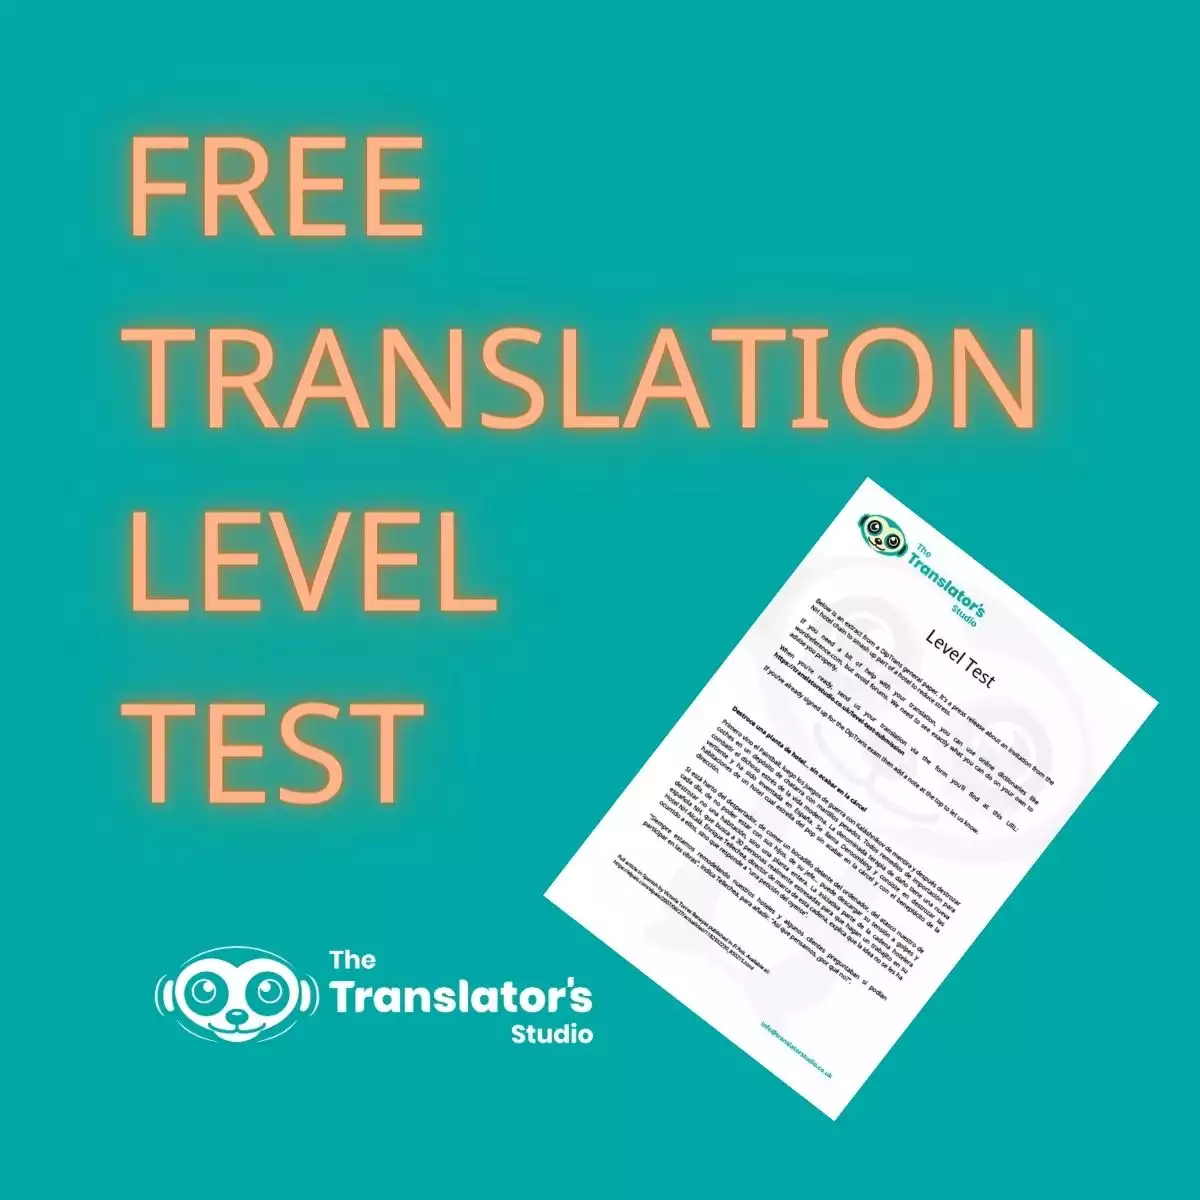 Free Translation Level Test